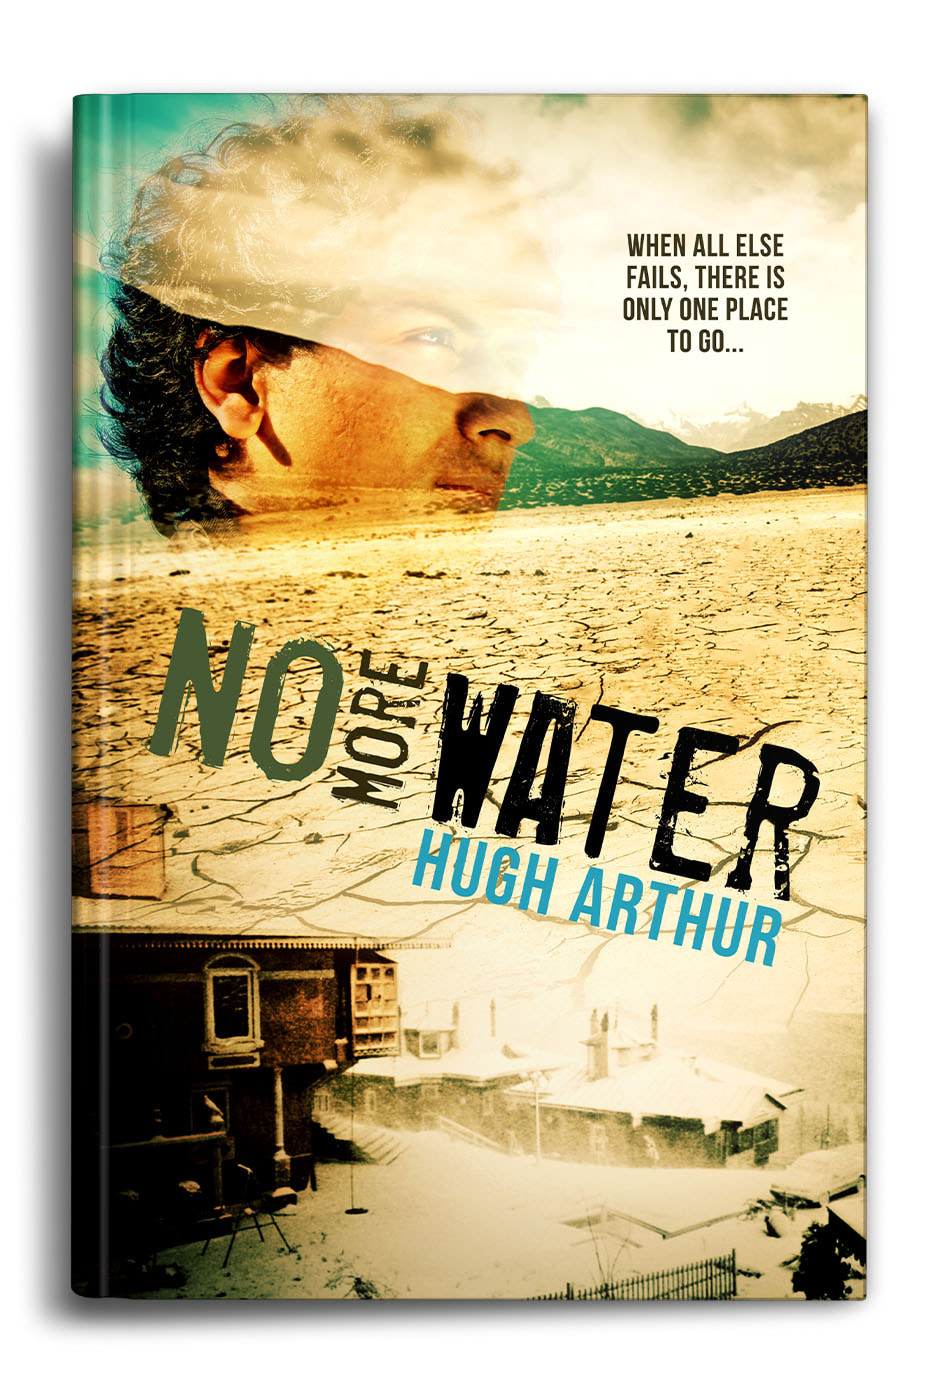 No More Water - Hugh Arthur